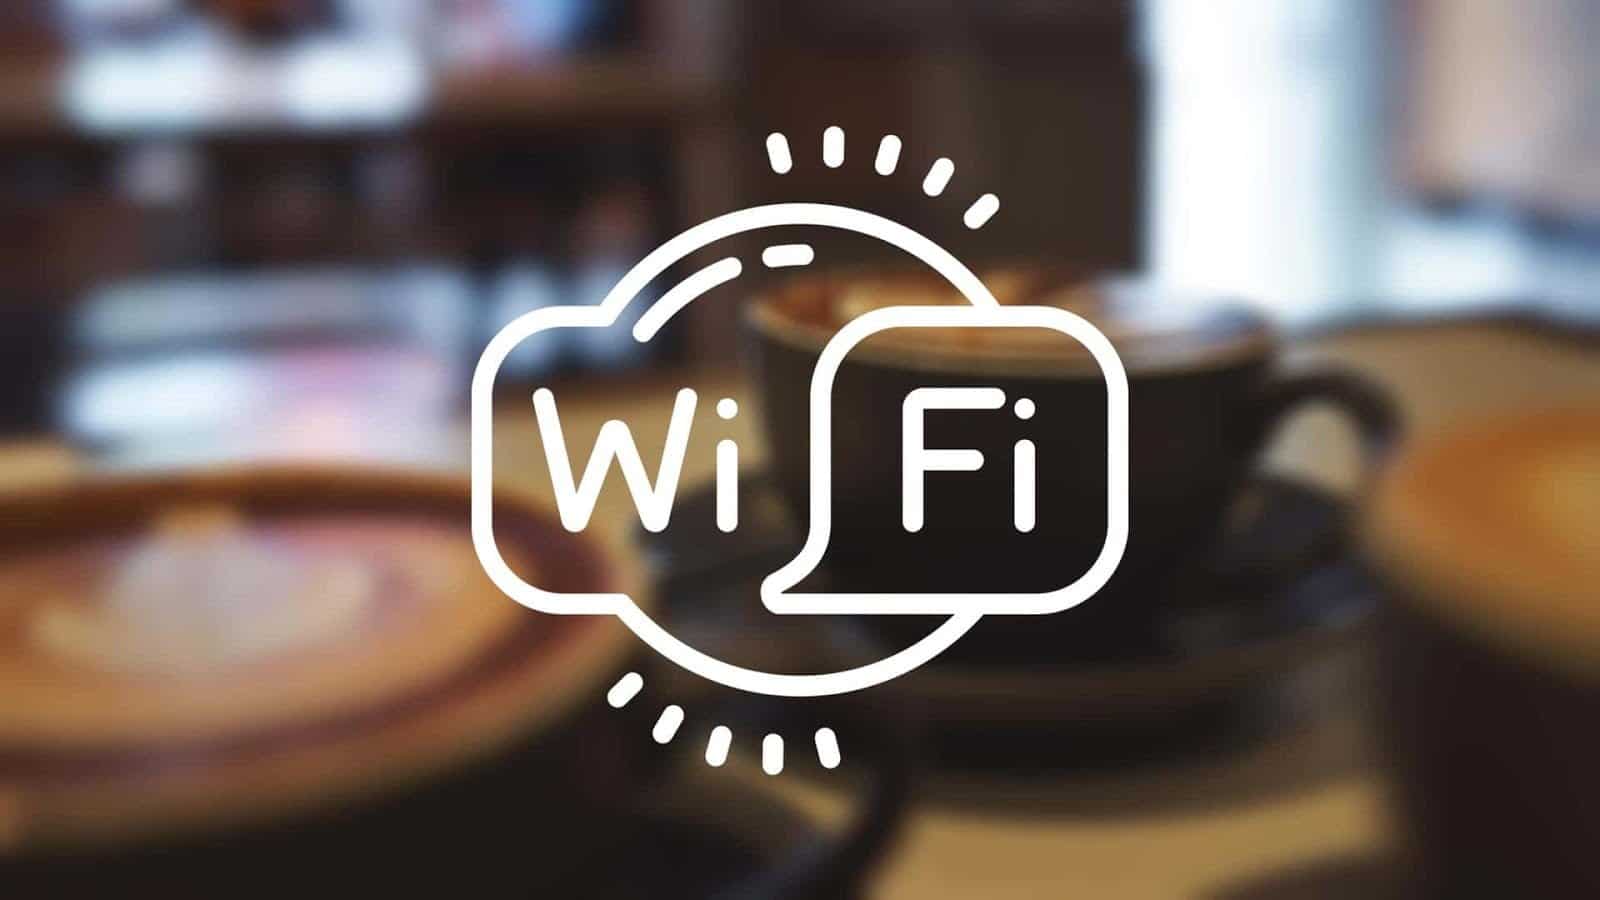 More information about "«WiFi4GR»: Στην τελική ευθεία το δωρεάν WiFi σε δημόσιους χώρους"